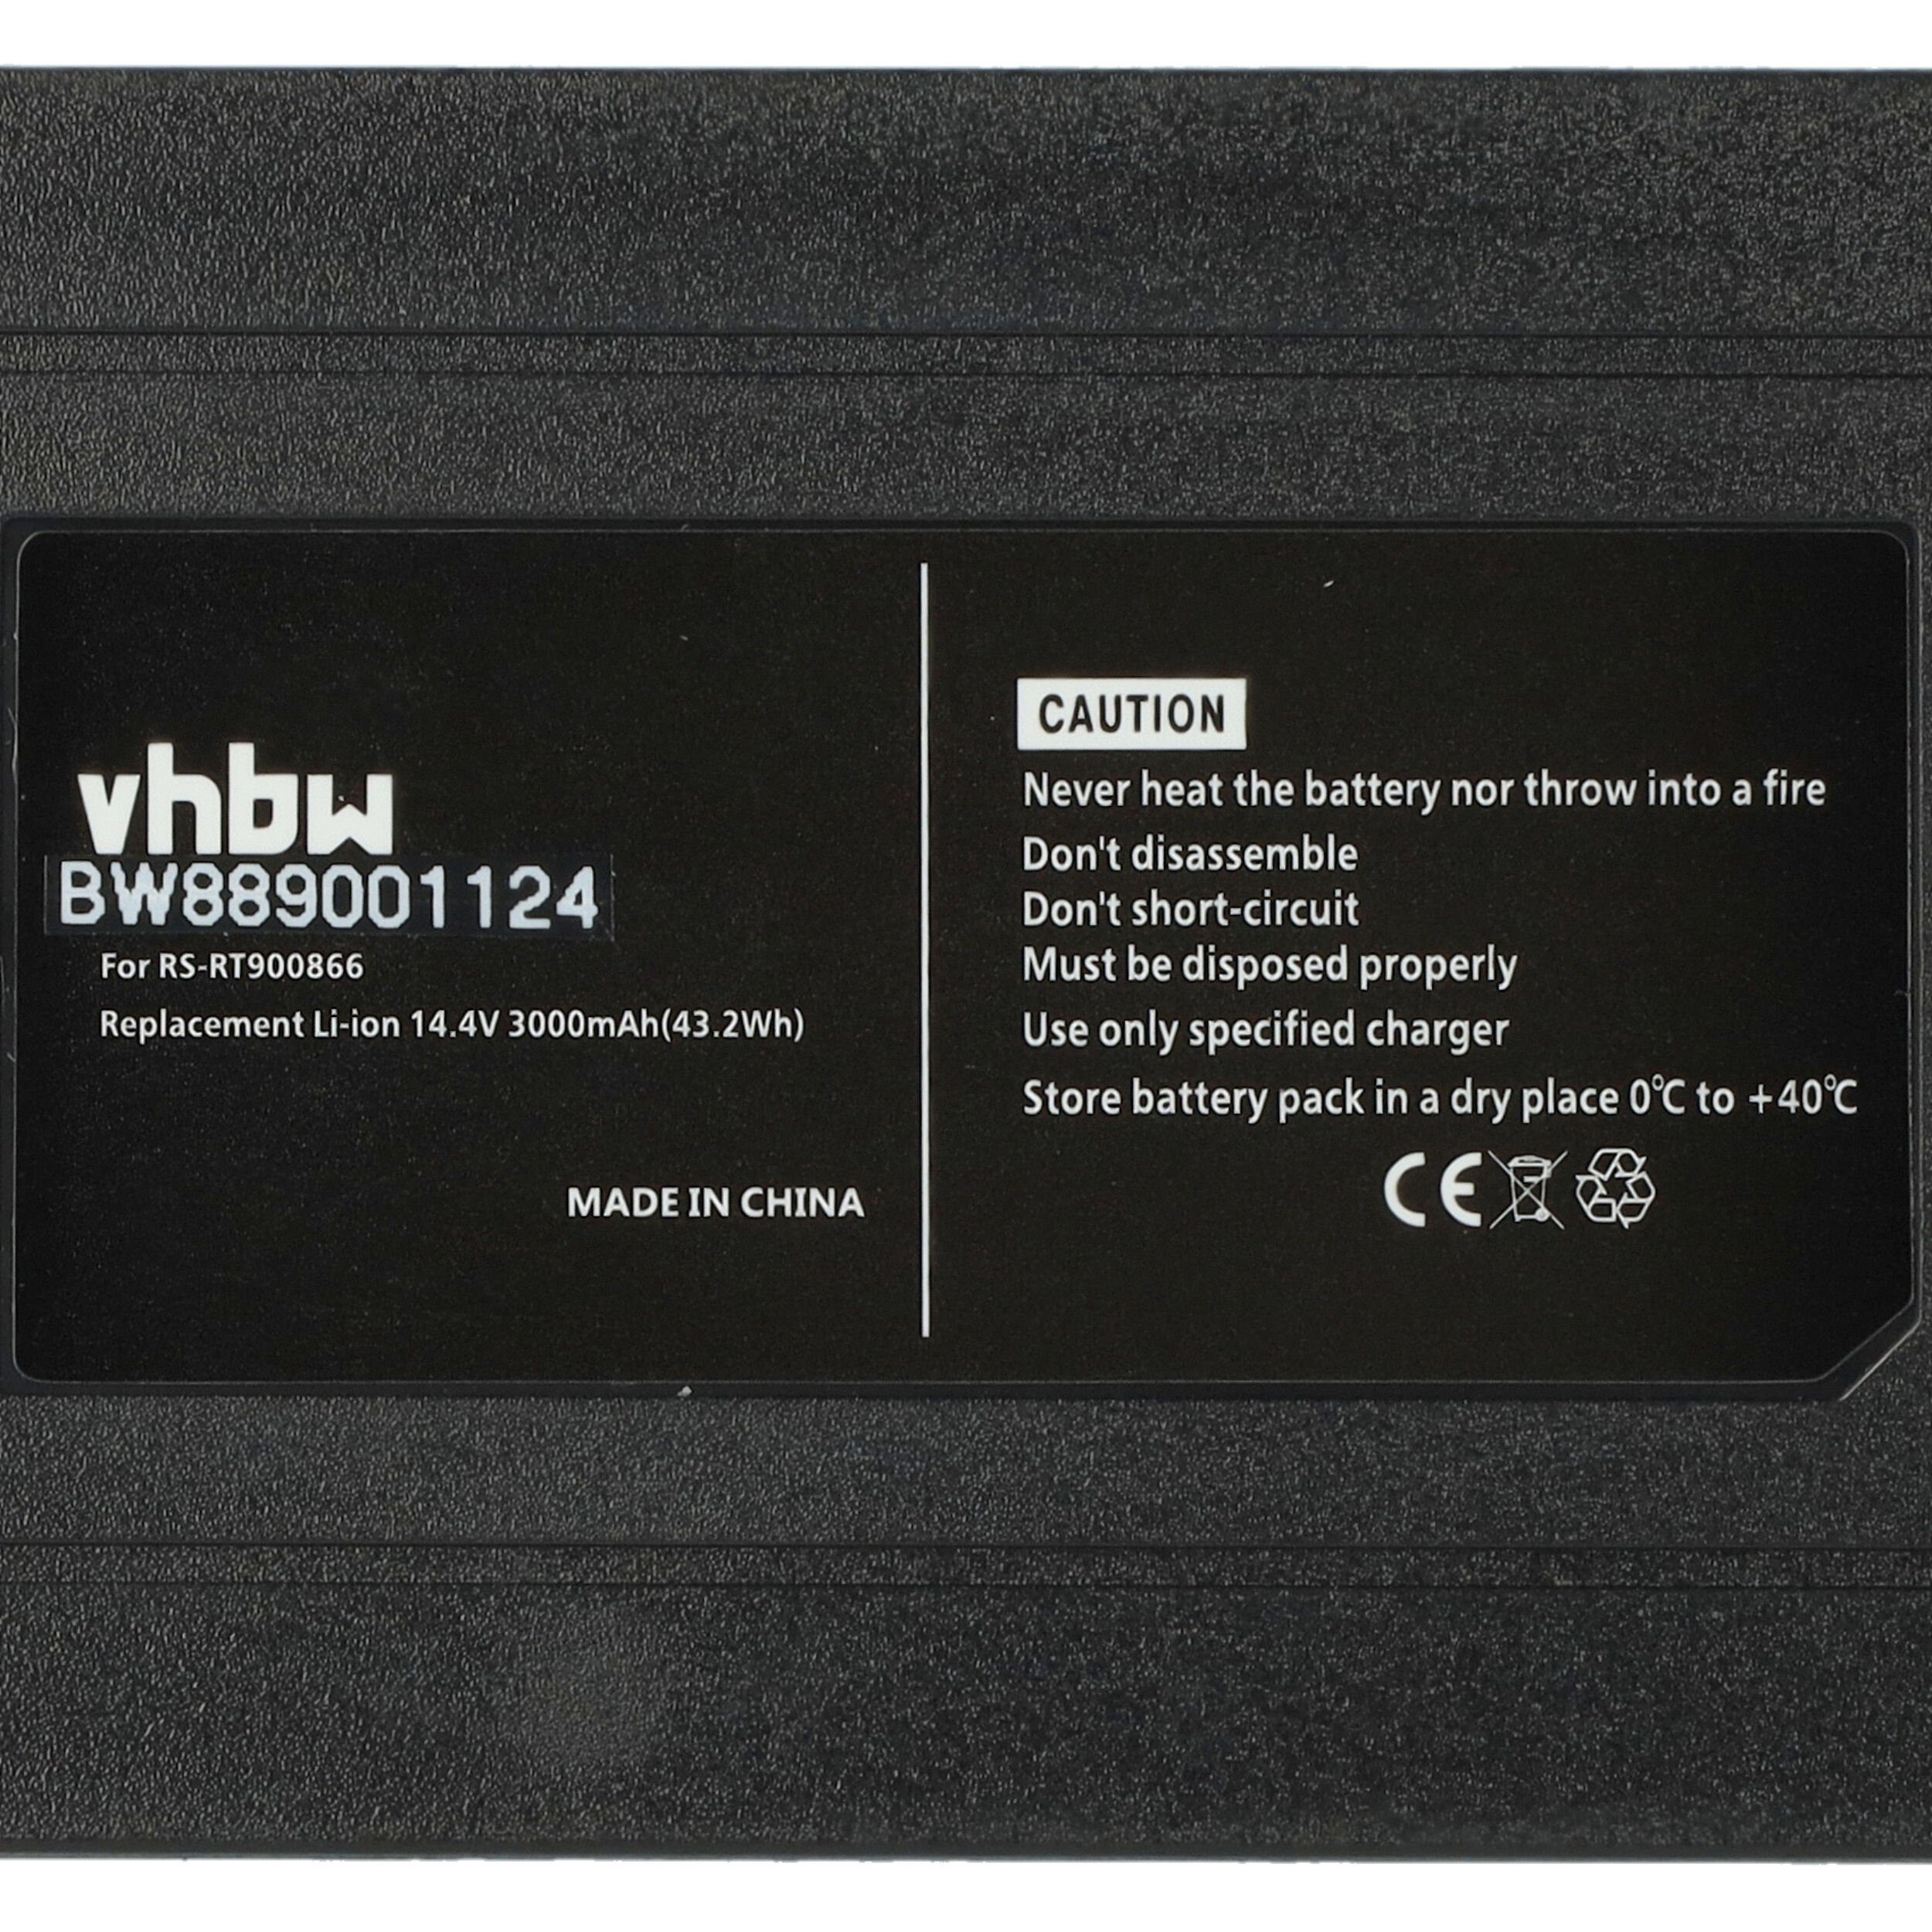 vhbw kompatibel mit V) RR6943WH, Essential Force mAh Rowenta RR697 (14,4 Smart Staubsauger-Akku Li-Ion 3000